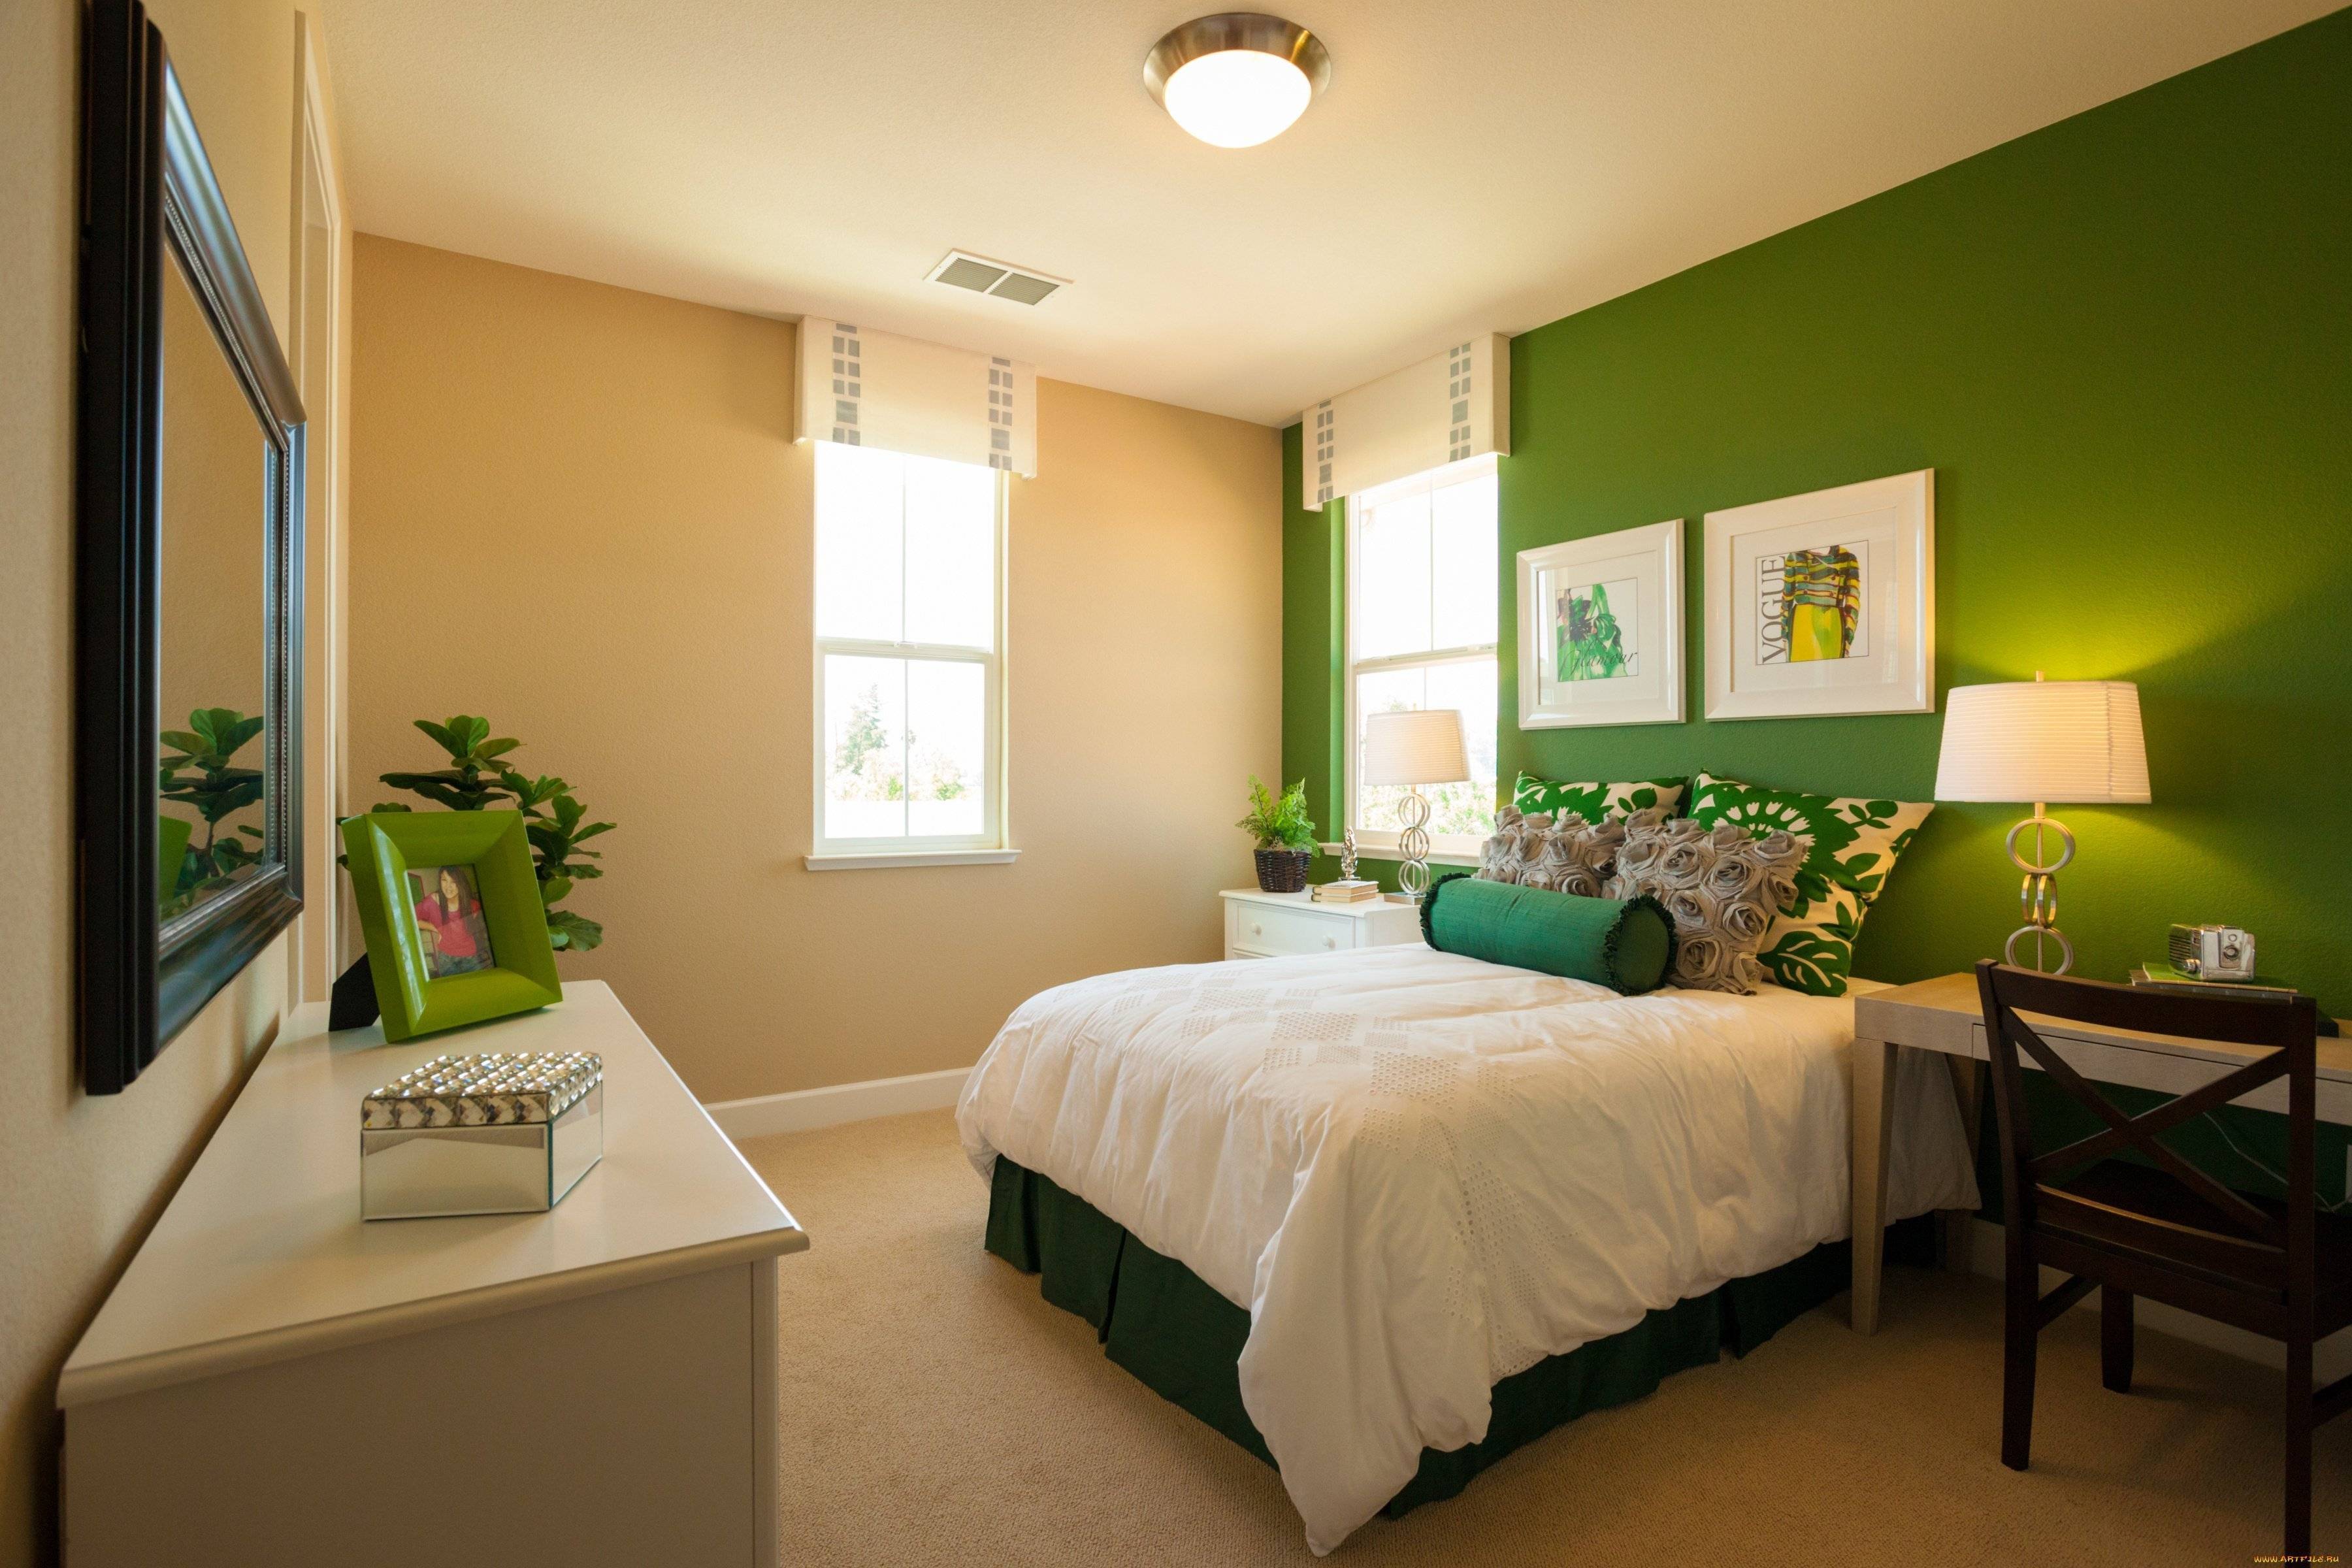 Спальня в бежево зеленых тонах